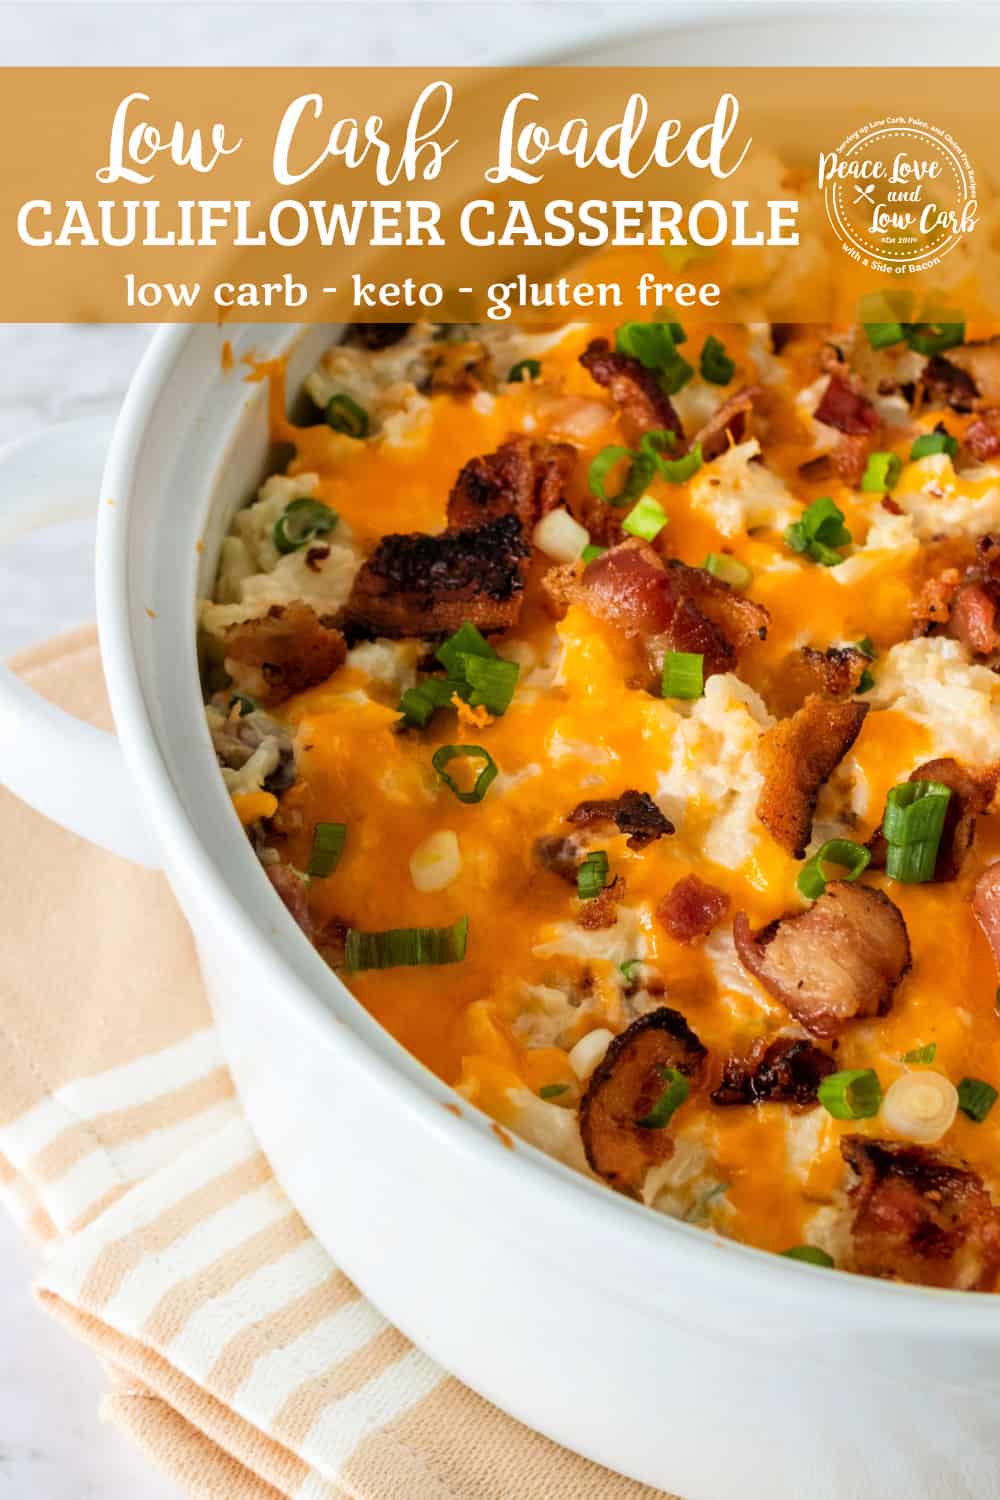 Low Carb Loaded Baked Cauliflower Casserole | Keto, Gluten Free